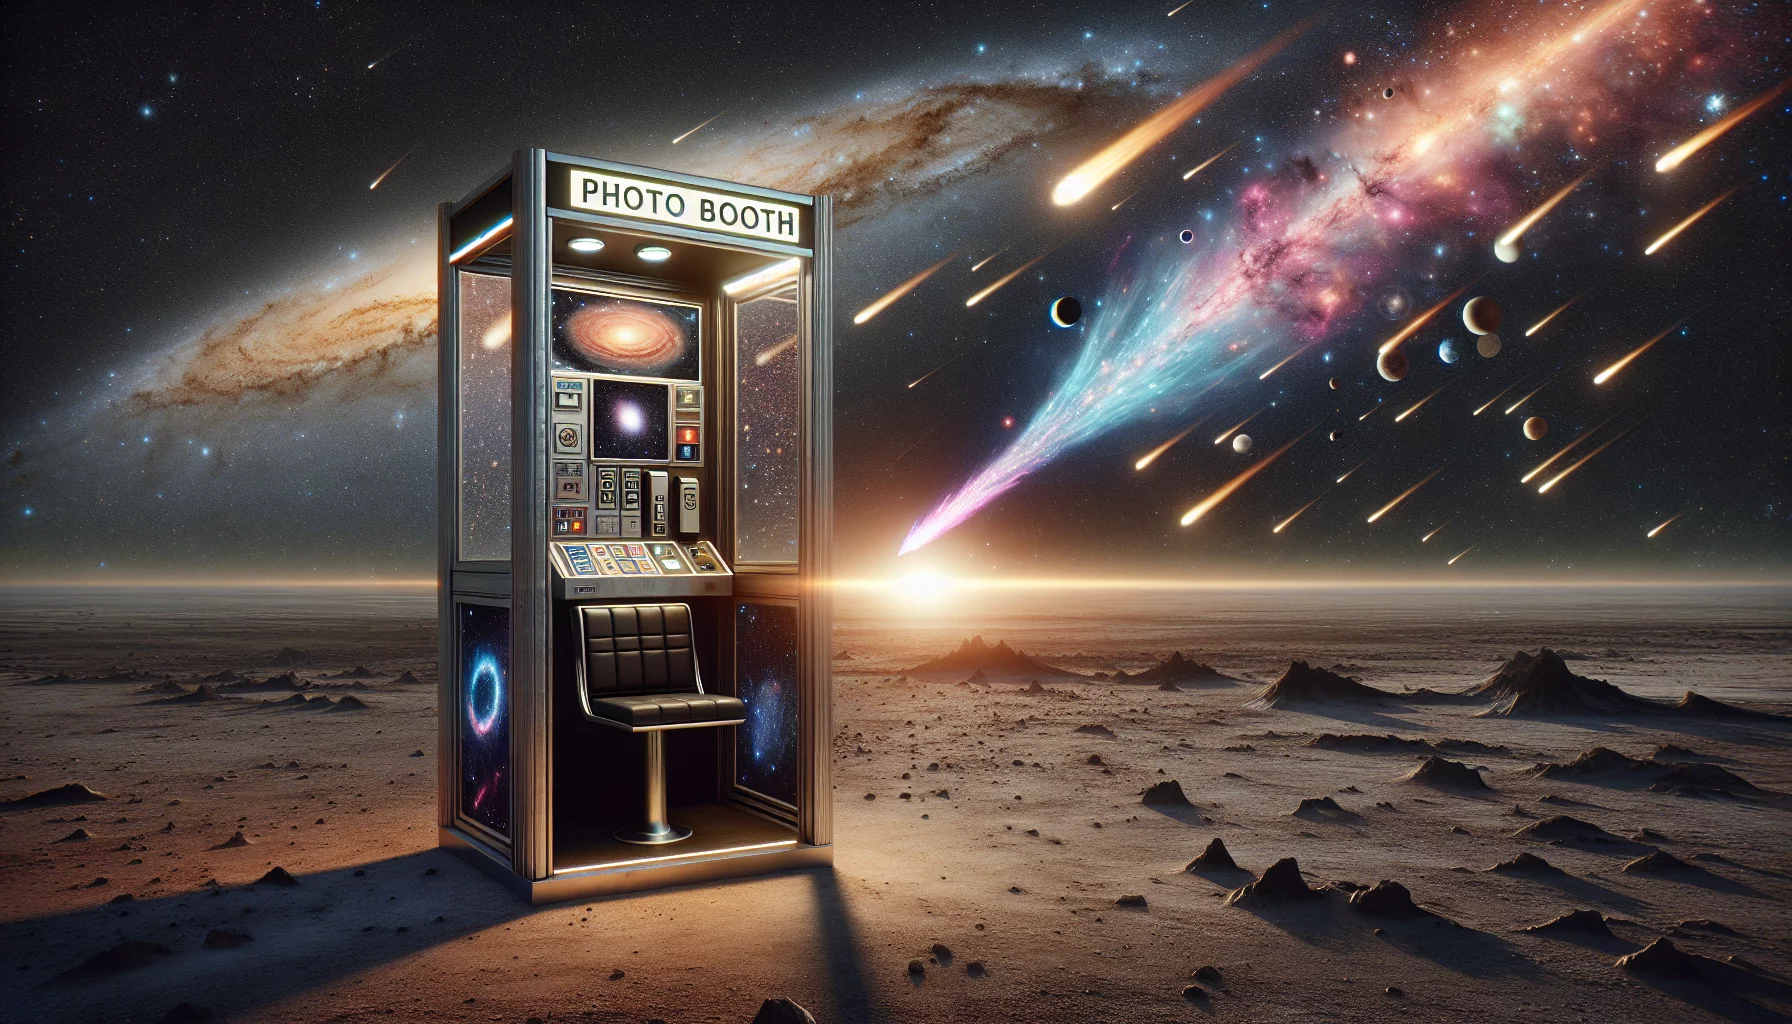 Voyage intergalactique Un photobooth spatial pour une aventure cosmique